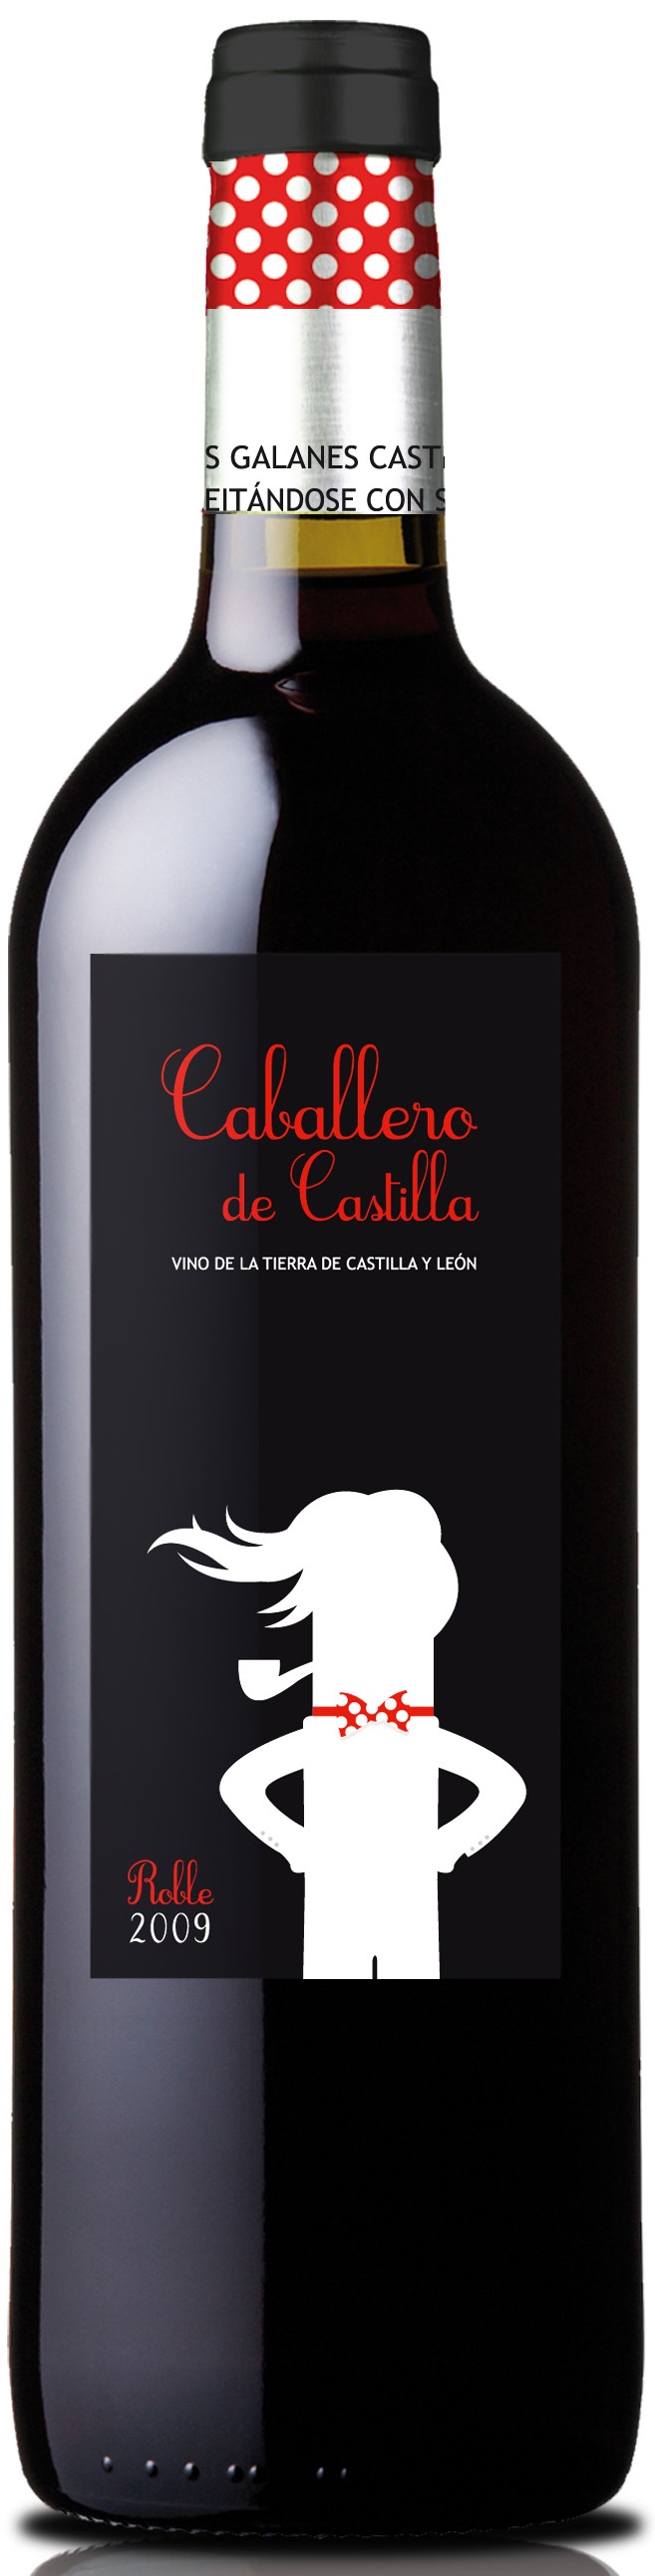 Bild von der Weinflasche Caballero de Castilla Roble